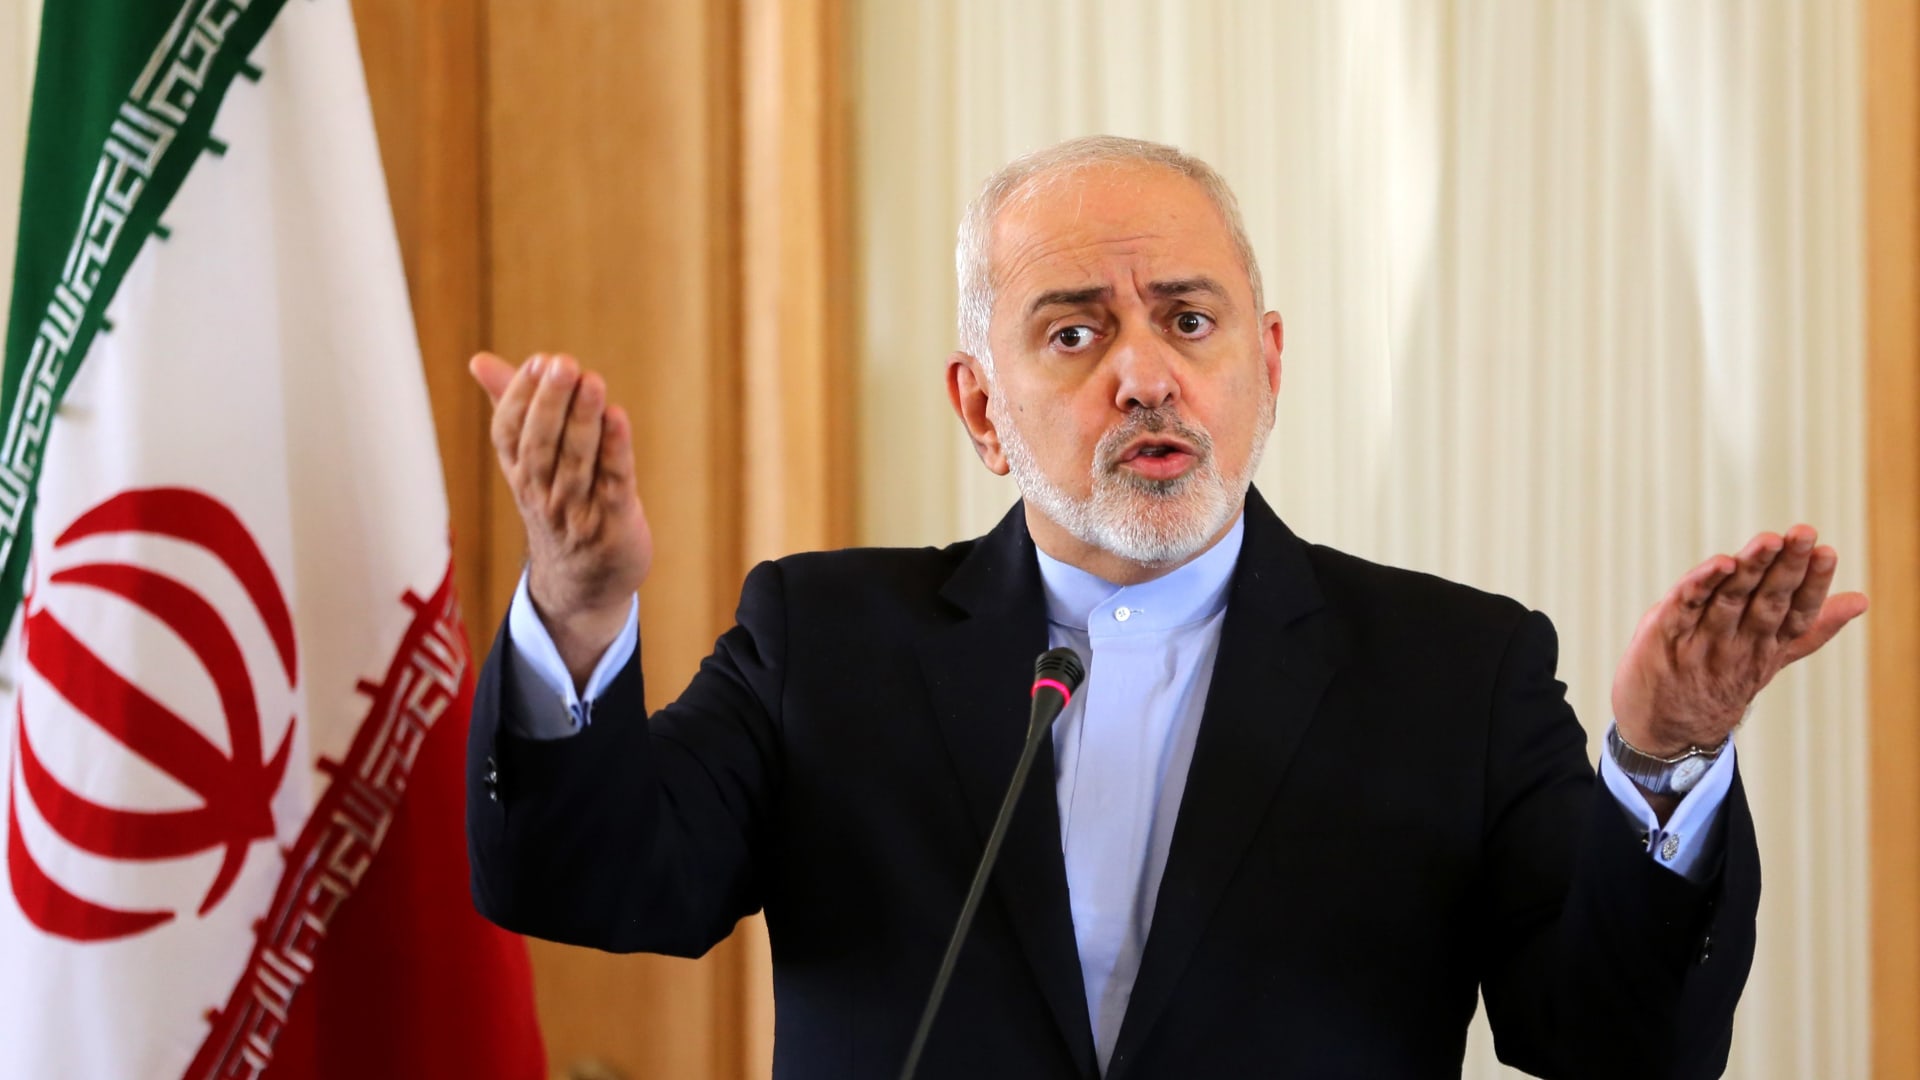 ظريف لـCNN: إيران لن تتفاوض مع أمريكا حتى تظهر "احترام" طهران